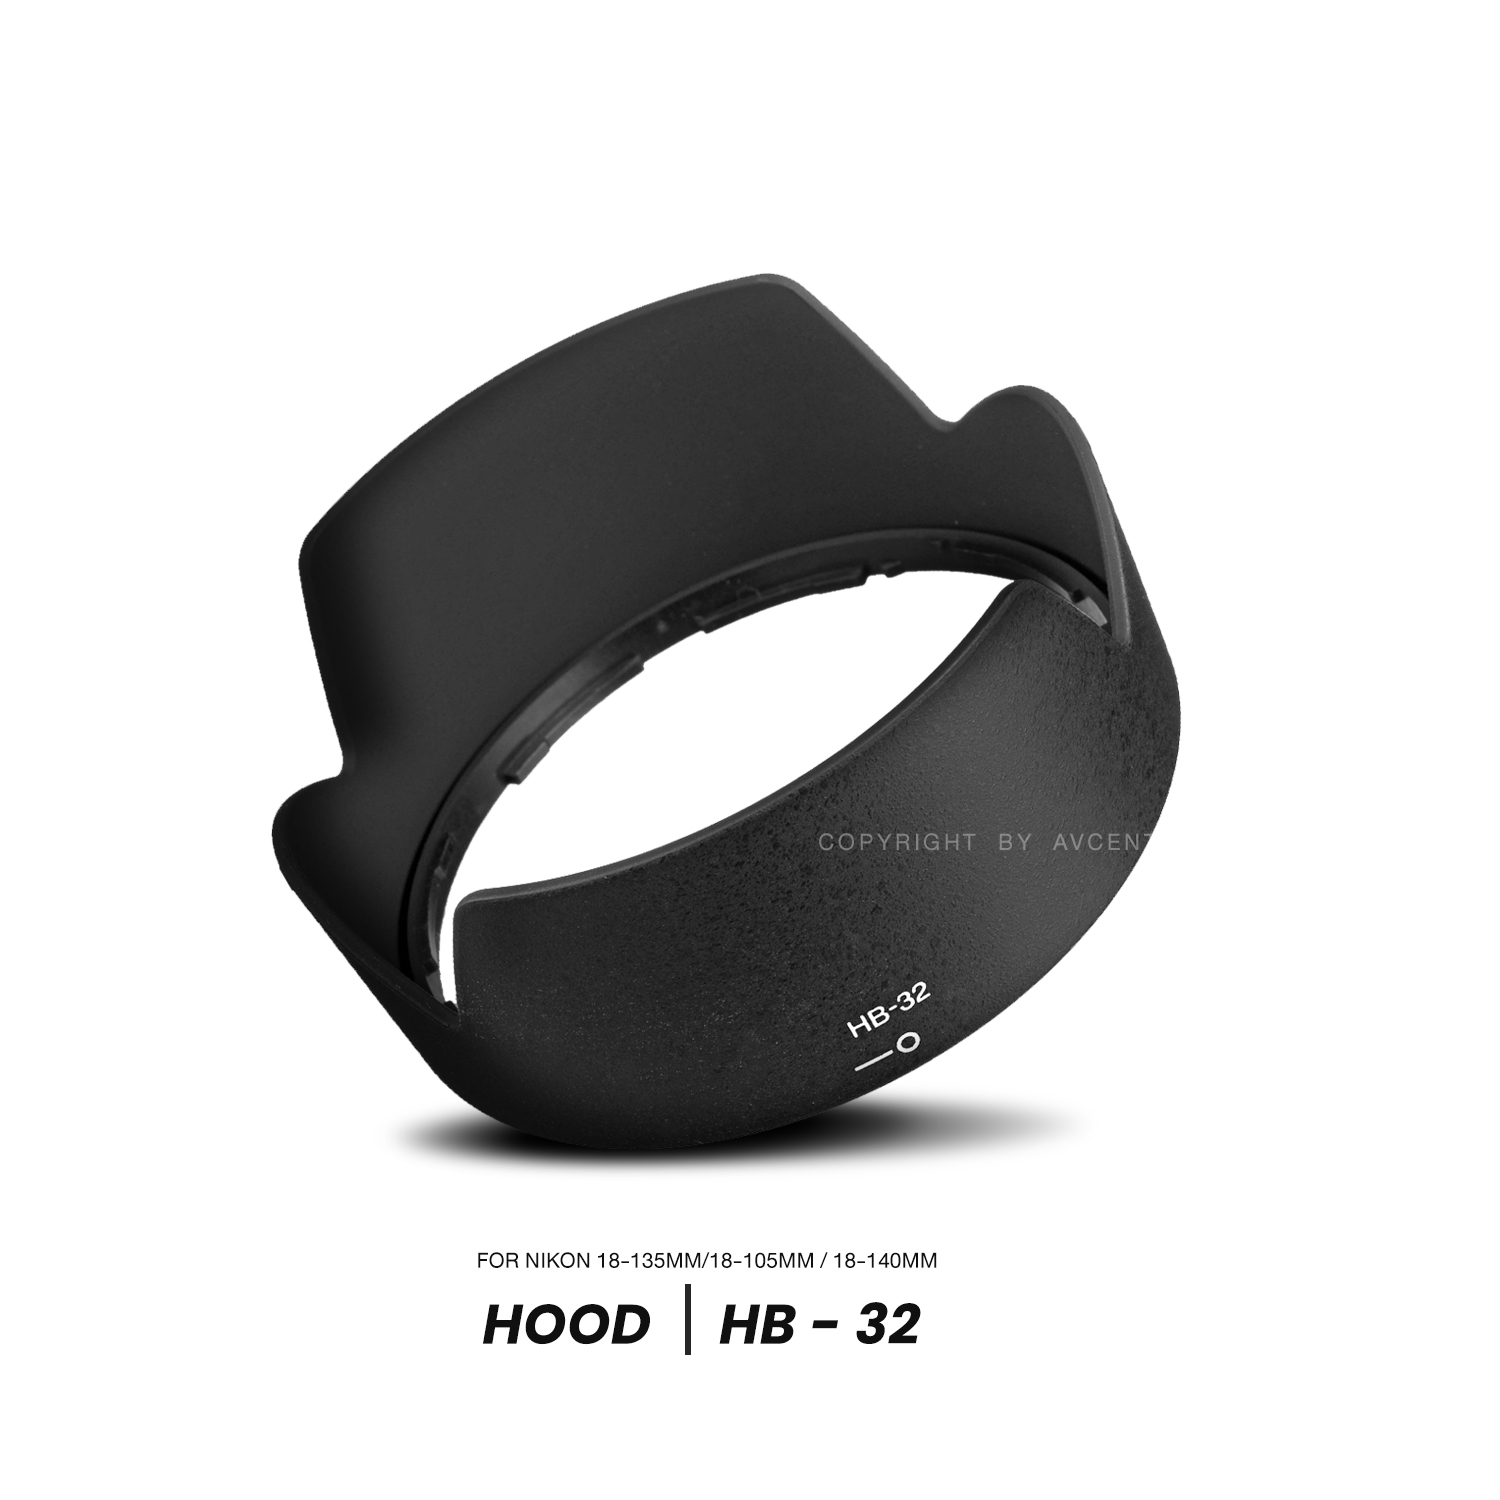 Hood HB-32 For lens 18-105mm, Lens 18-140mm